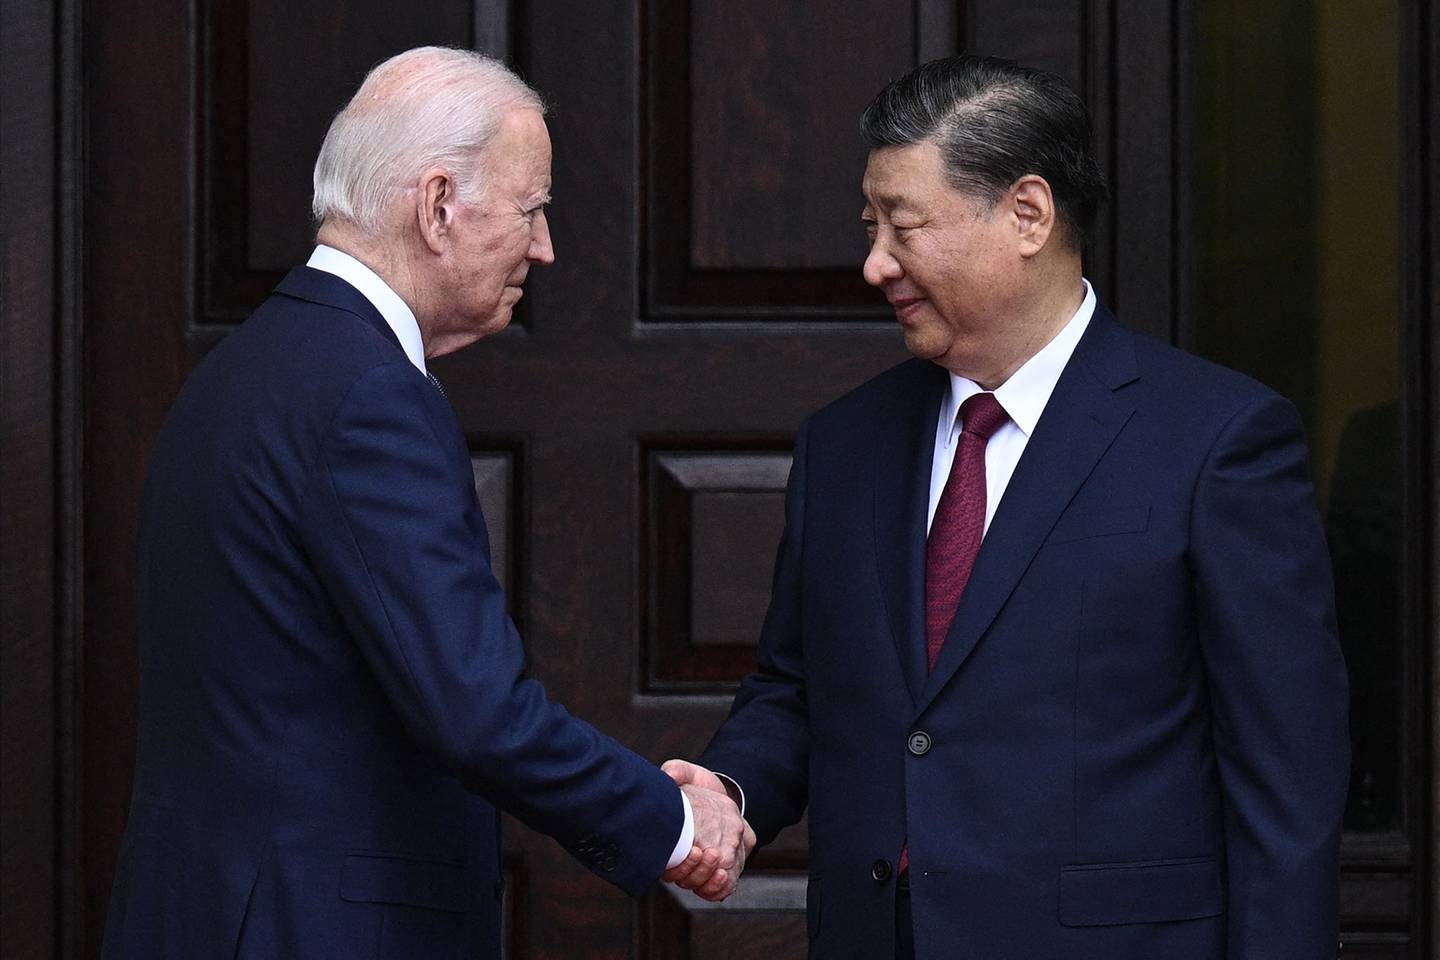 El presidente de los Estados Unidos, Joe Biden; y su homólogo de China, Xi Jinping, sostuvieron una reunión en Estados Unidos este martes y miércoles.